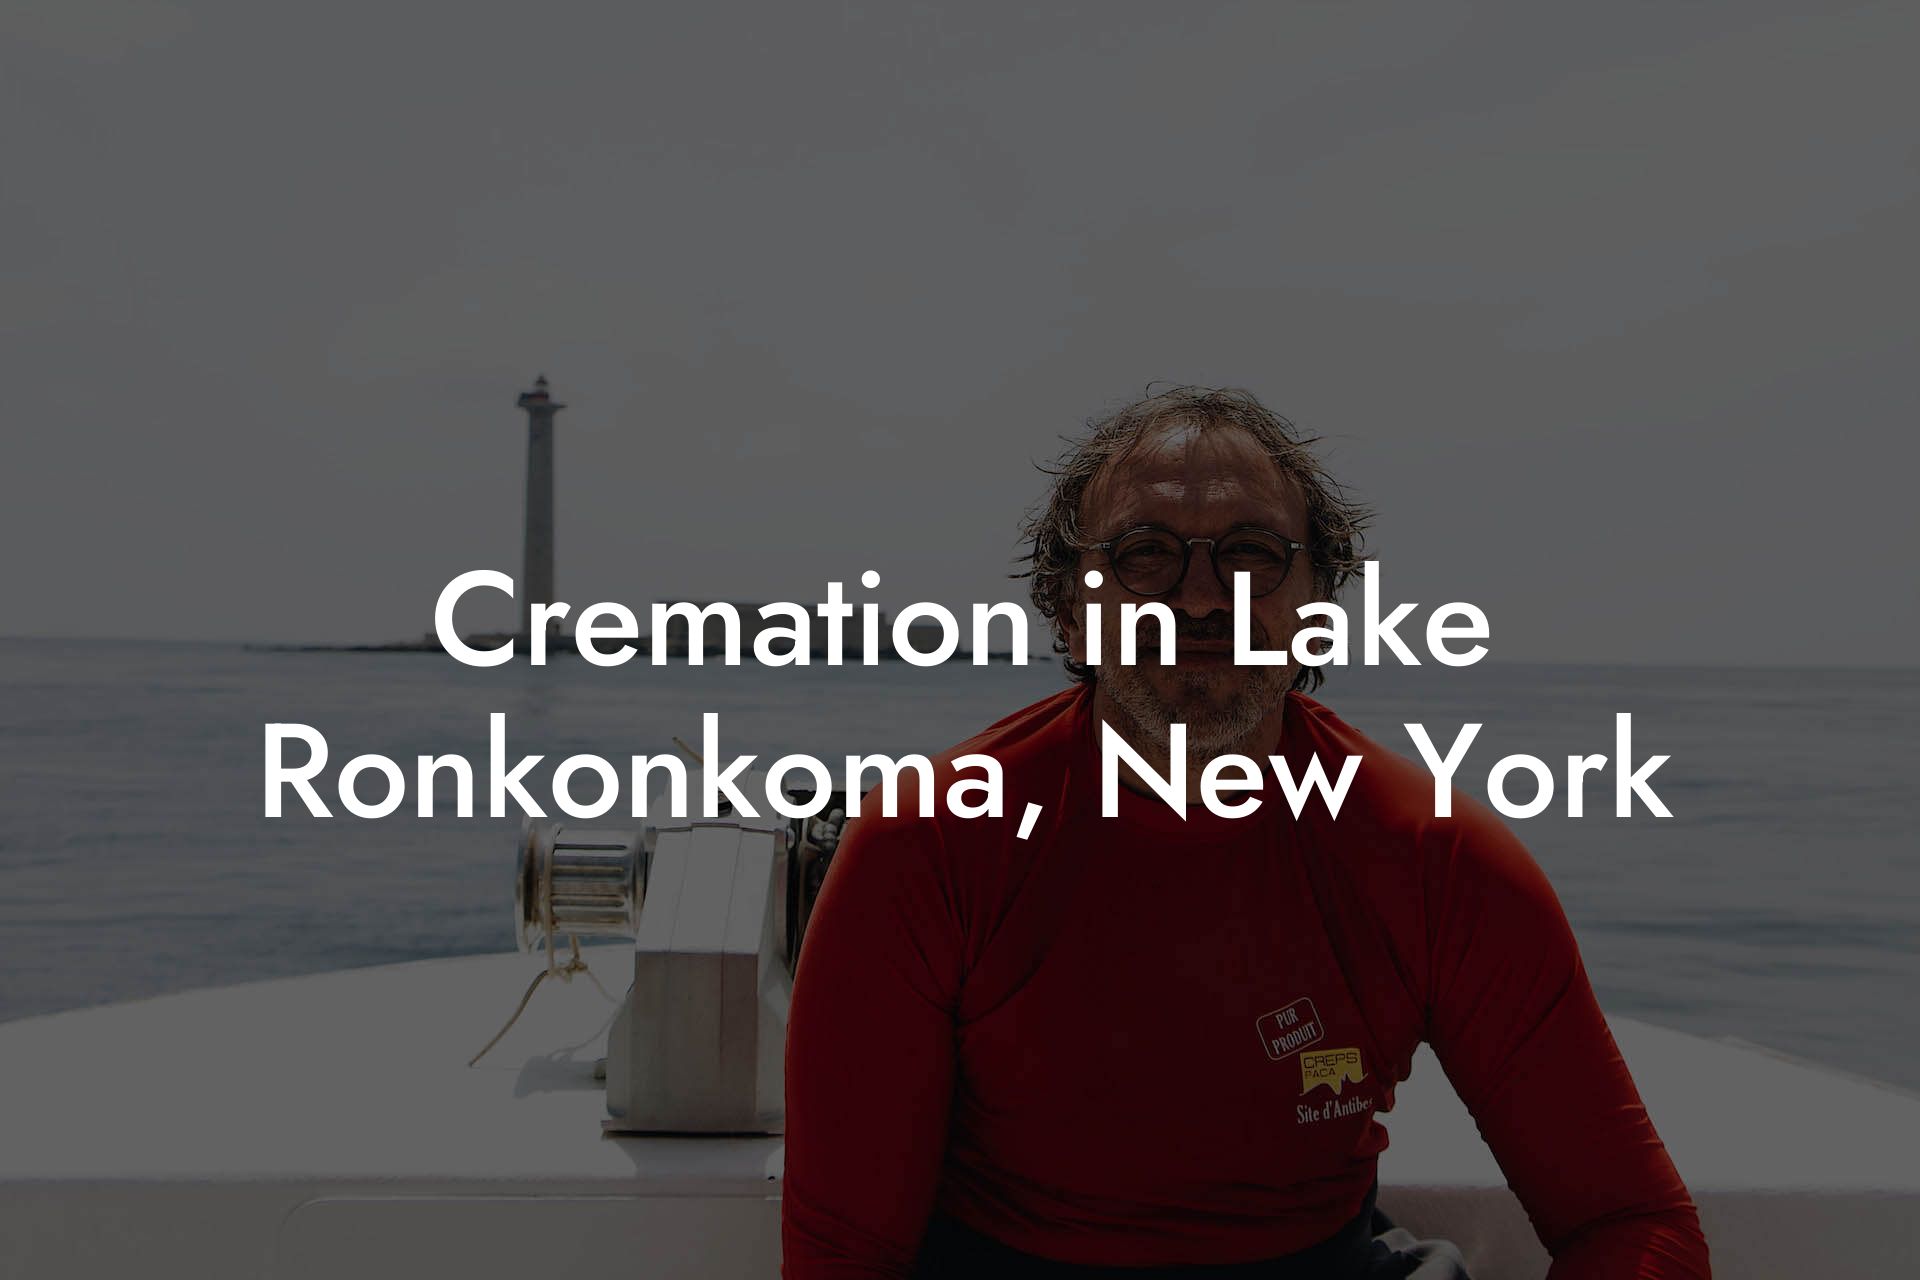 Cremation in Lake Ronkonkoma, New York